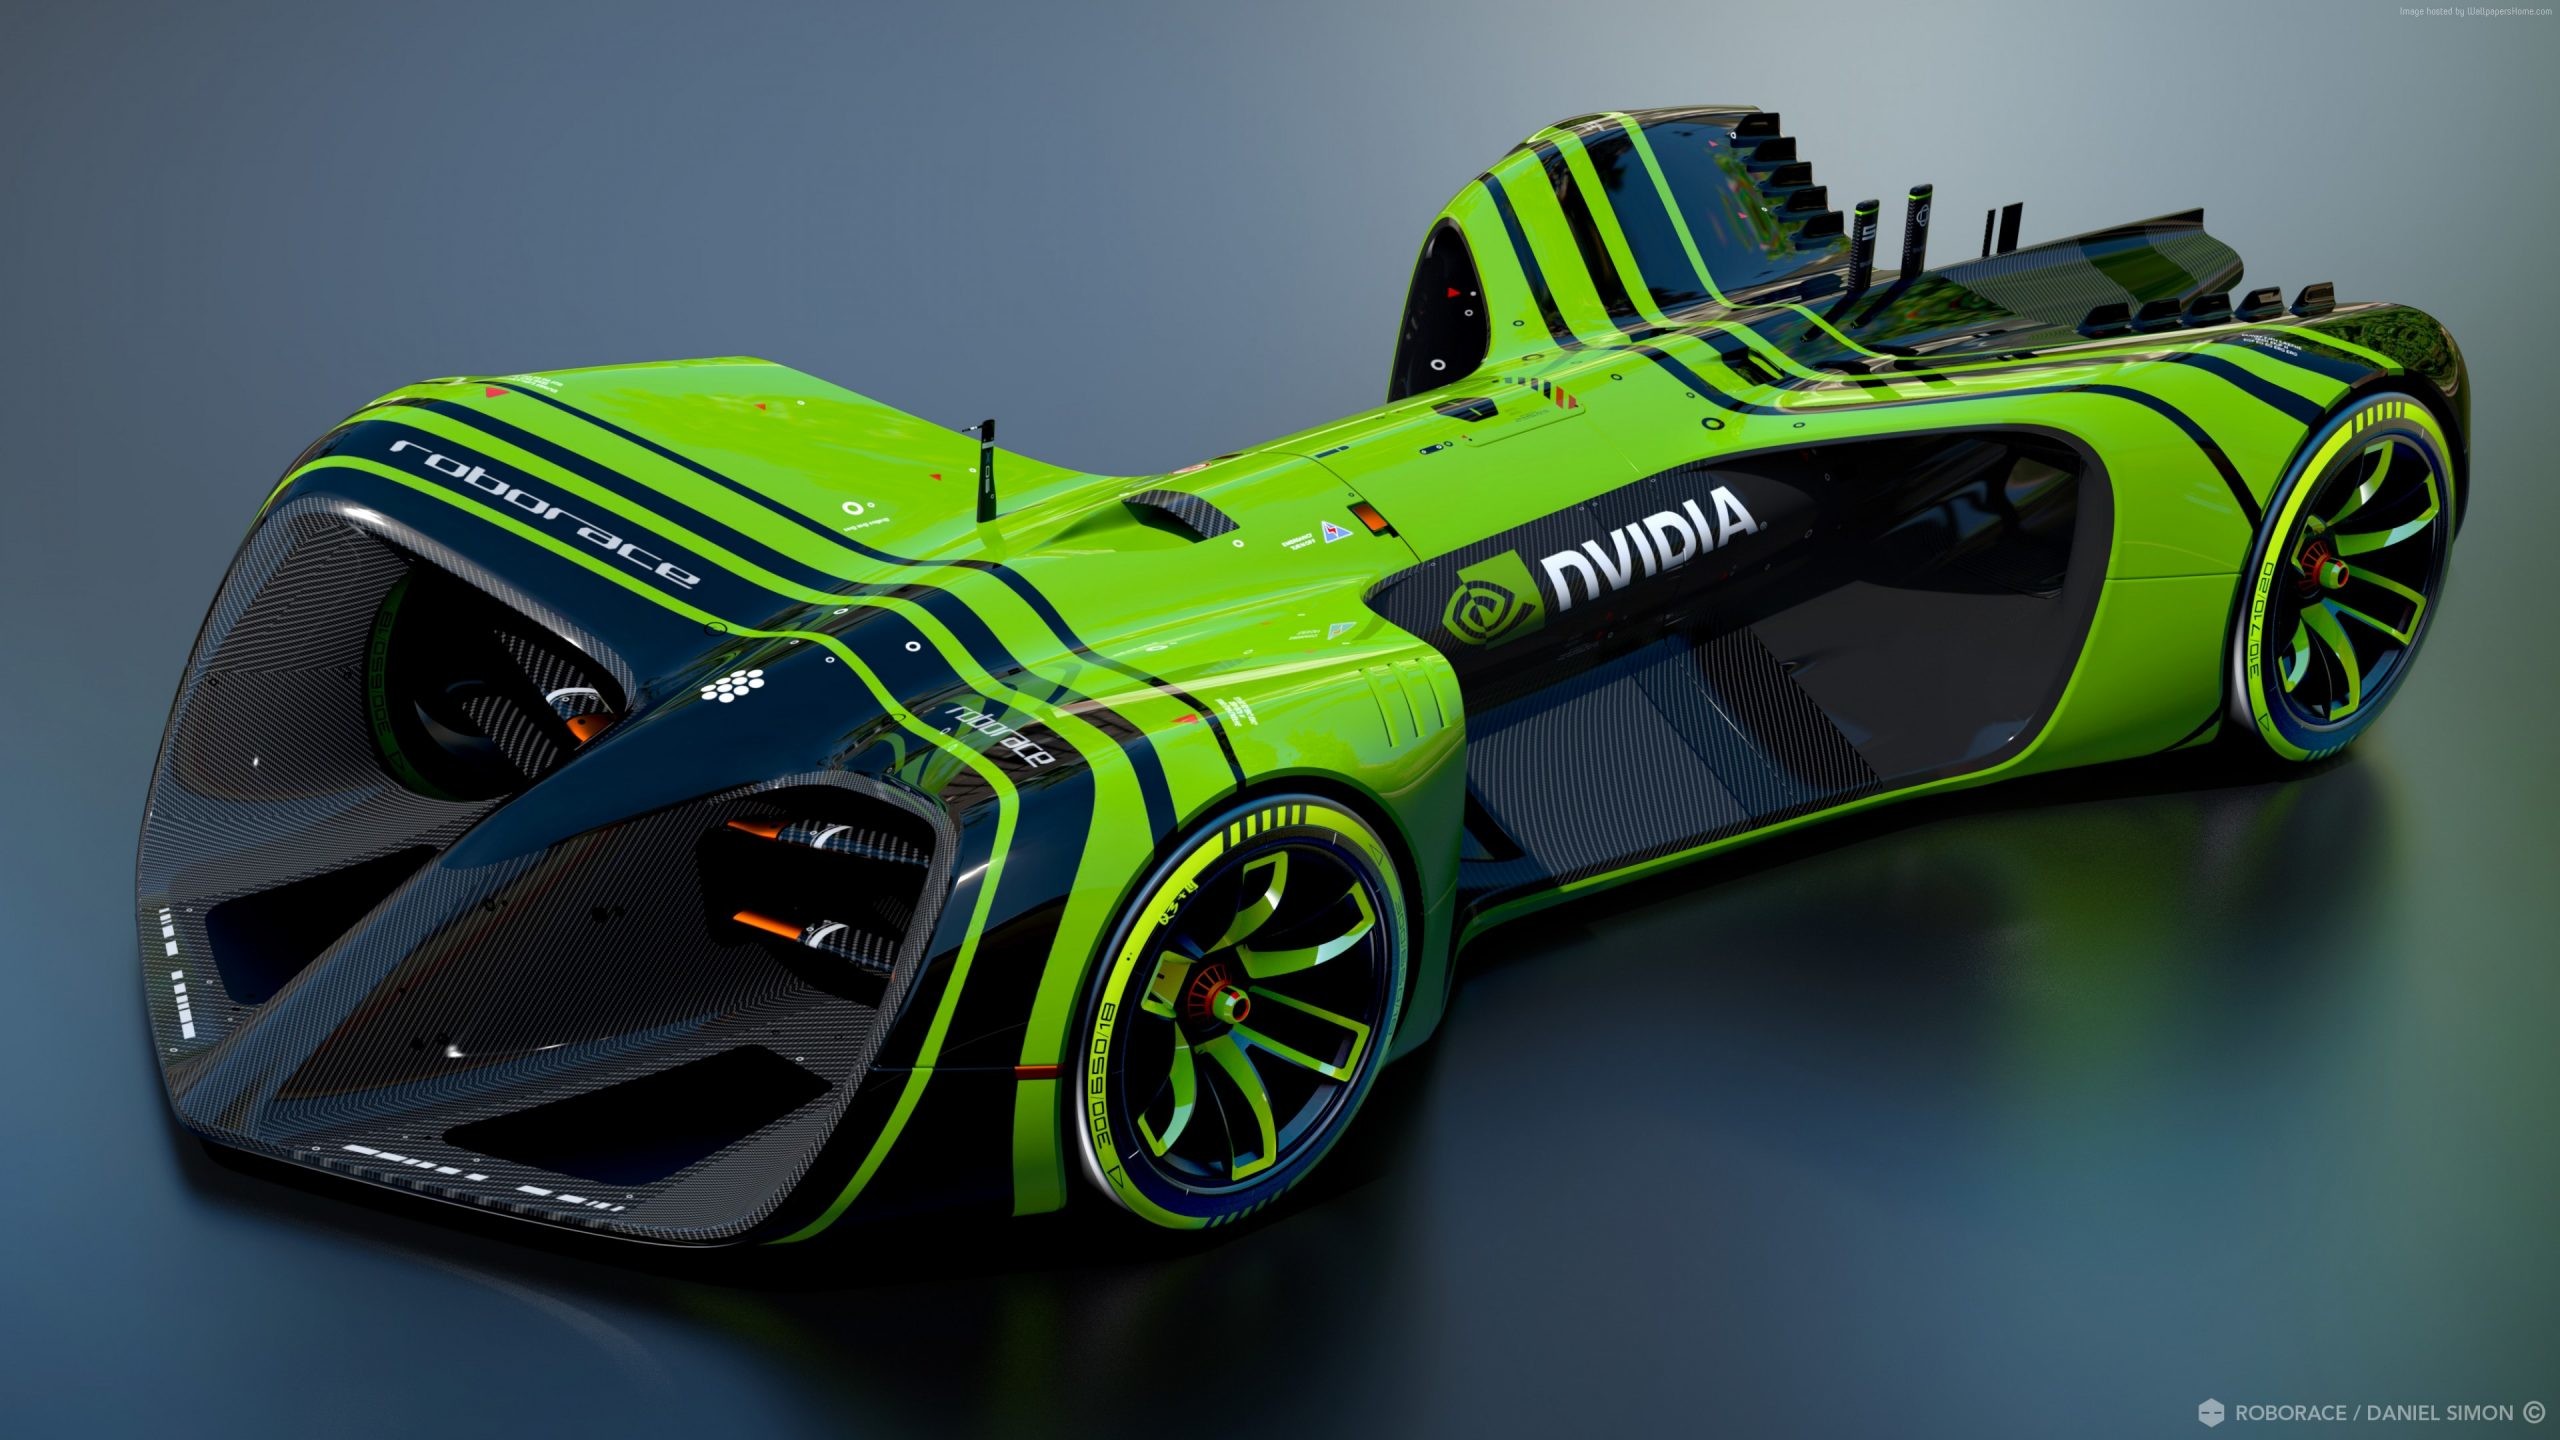 2560x1440 Roborace NVidia, future cars, Formula E season, electric cars, Daniel Simon